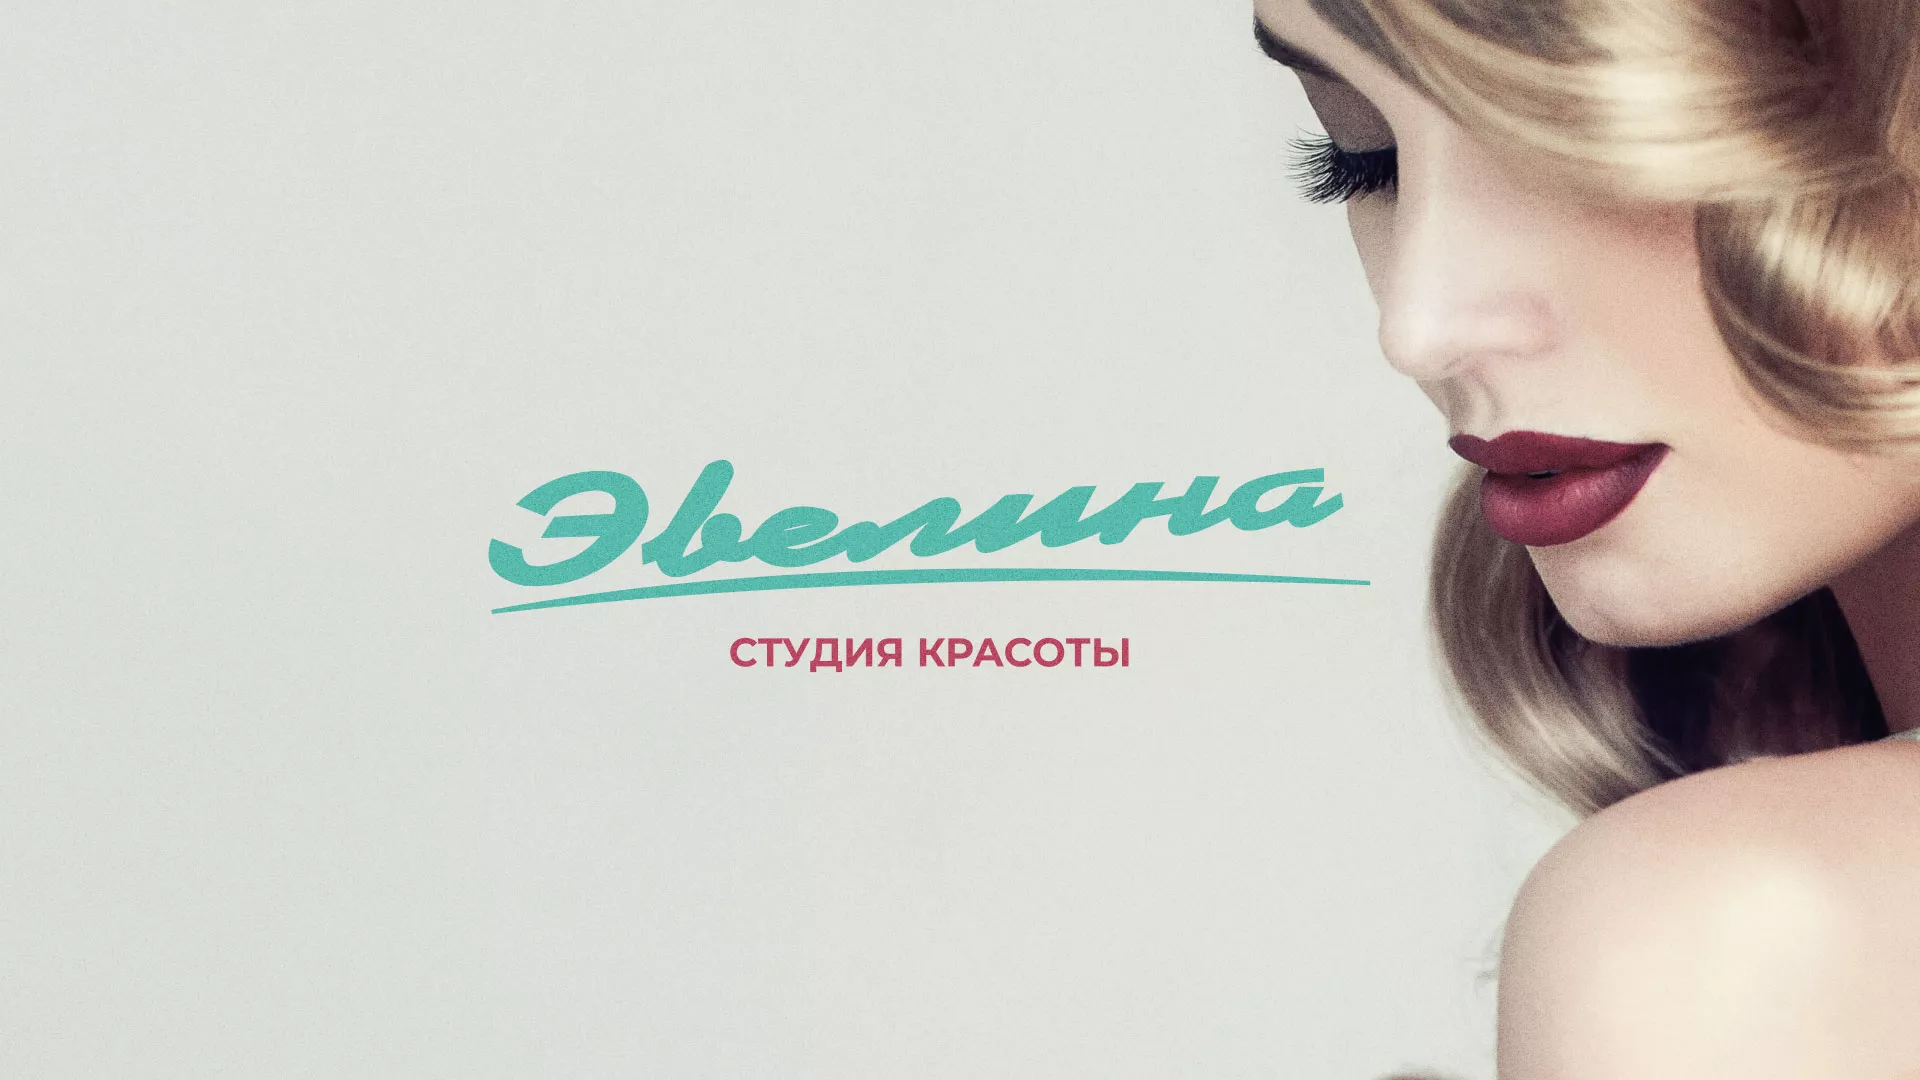 Разработка сайта для салона красоты «Эвелина» в Новокузнецке